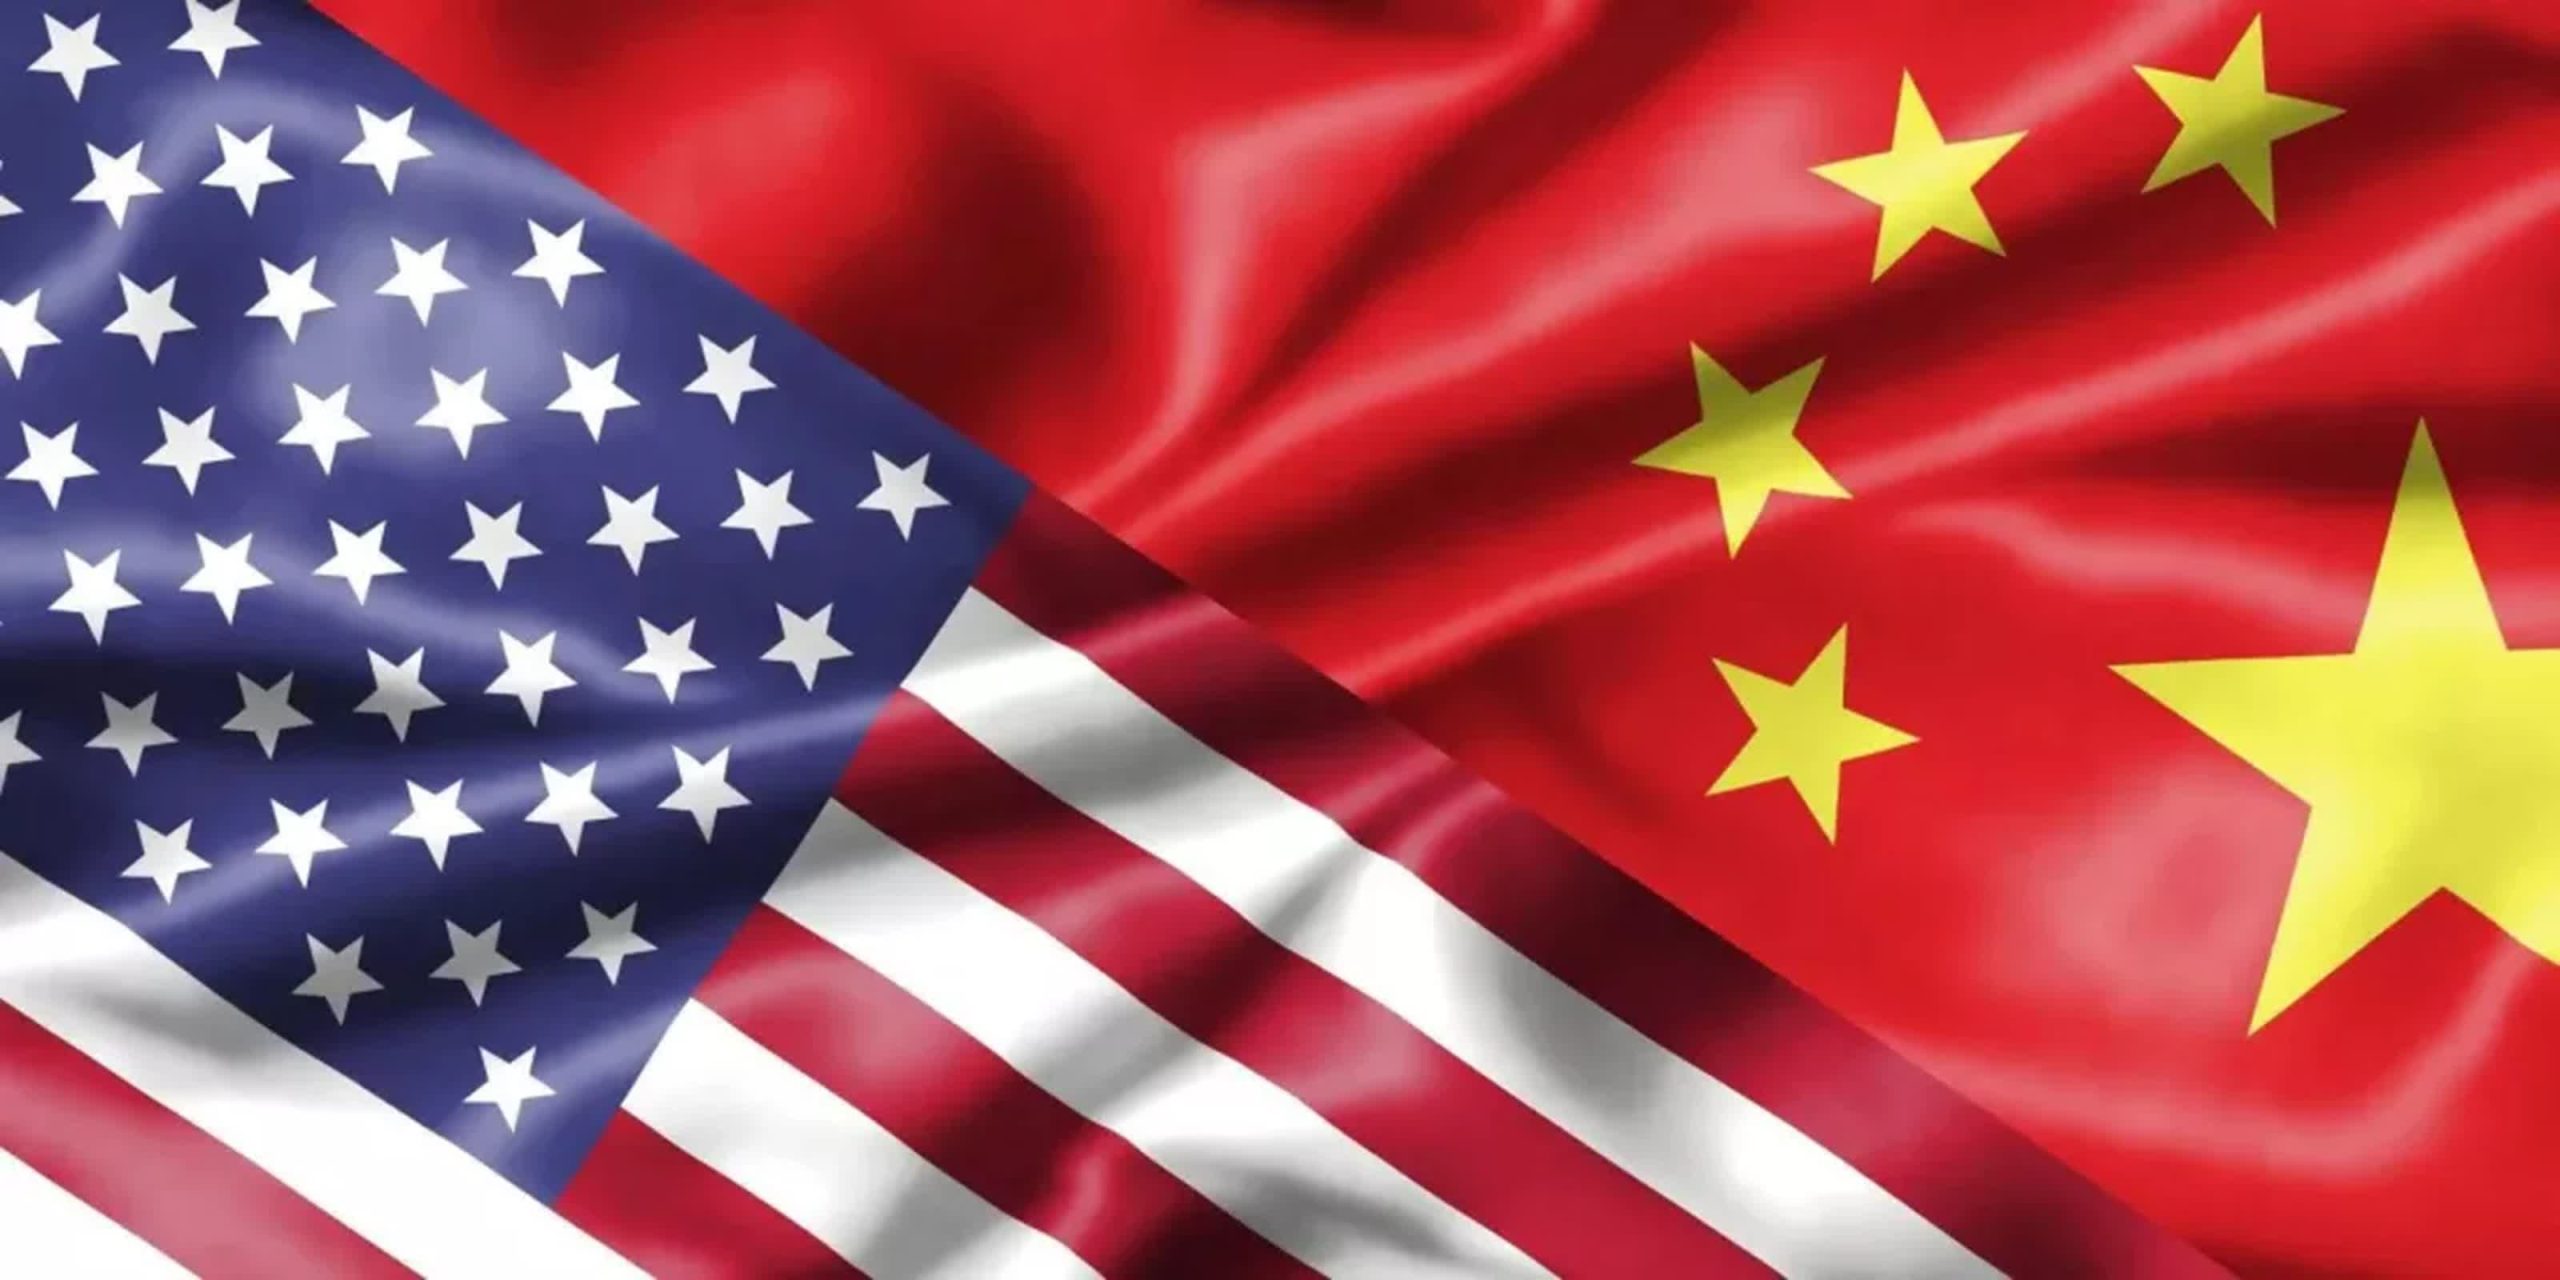 Estados Unidos impondrá nuevos aranceles a las importaciones chinas de energía limpia, incluidos los vehículos eléctricos